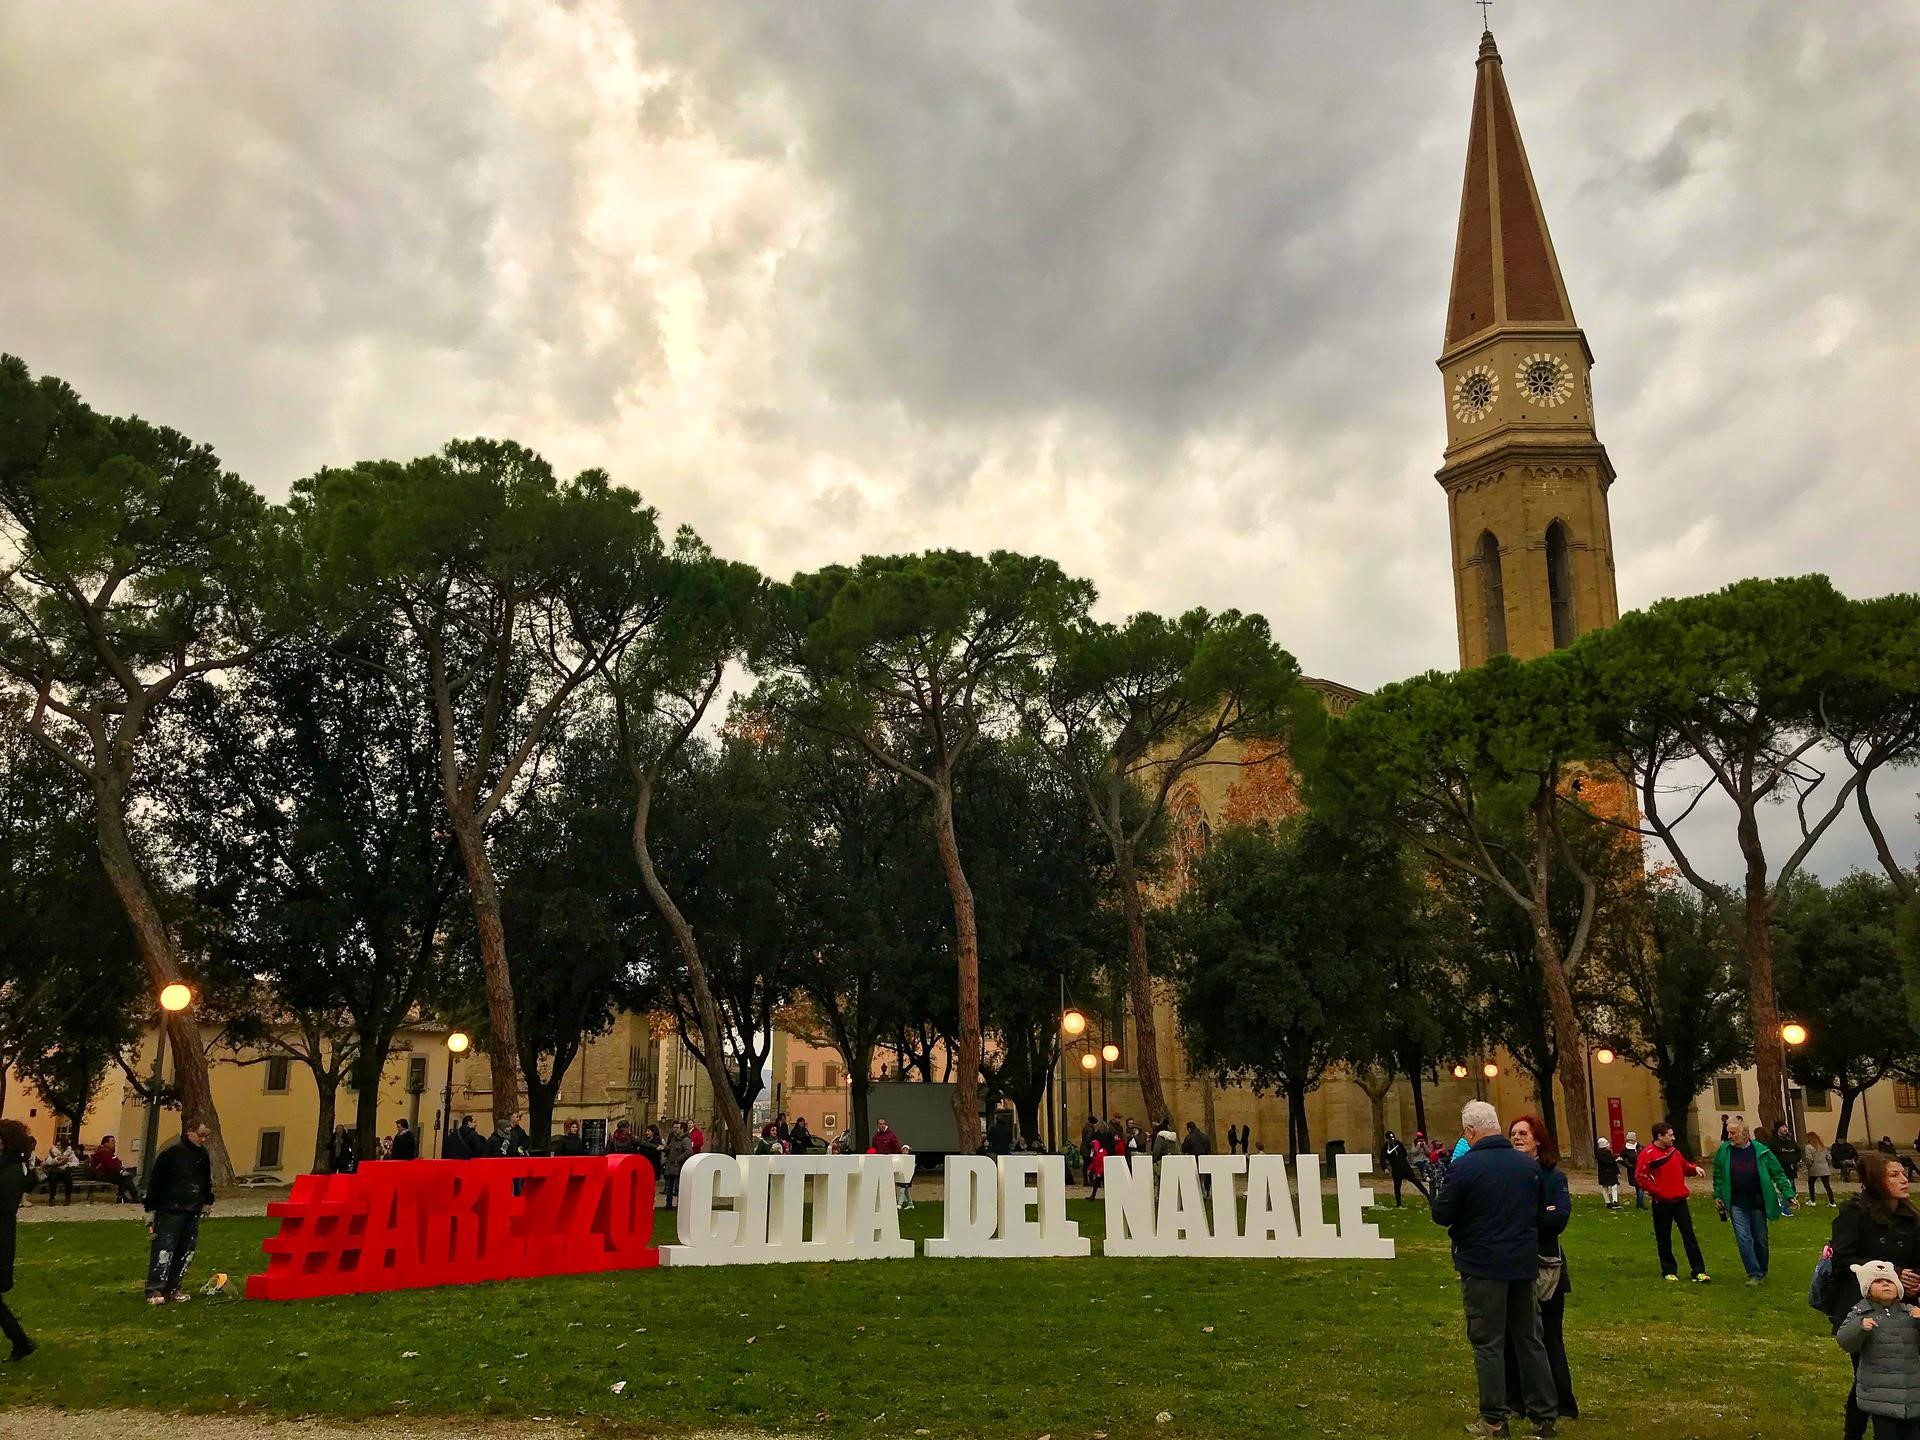 Arezzo Città del Natale 2019 lancia un contest per artisti di strada